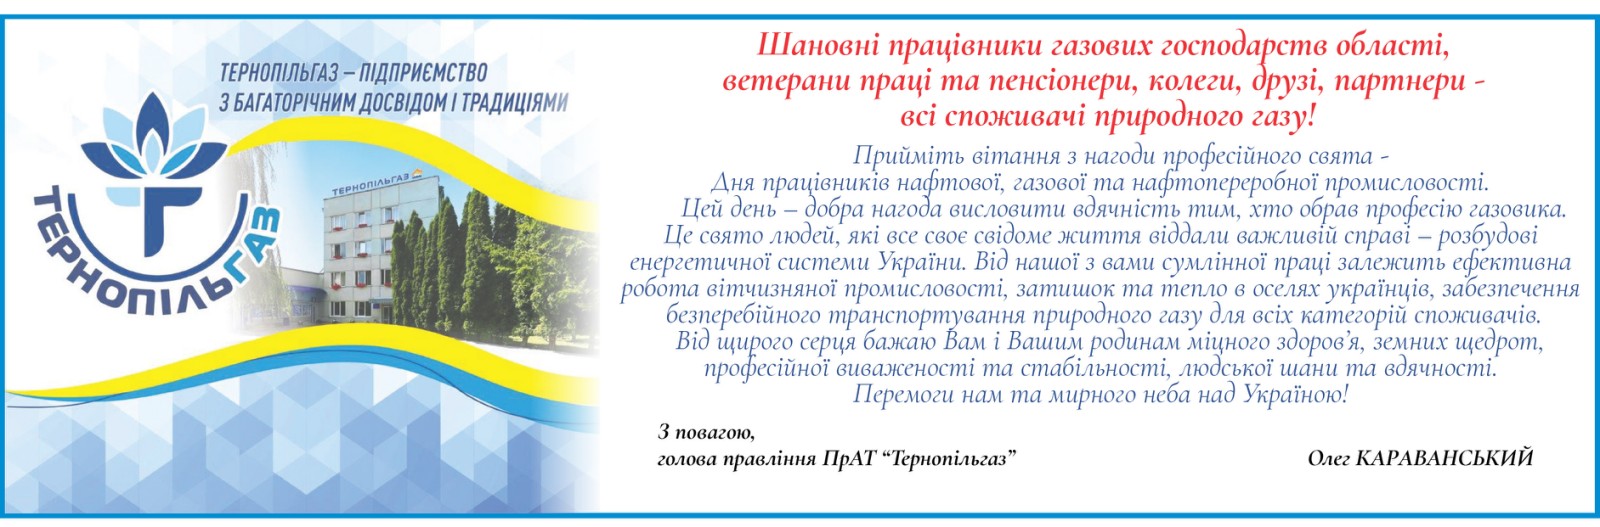 Привітання Голови правління ПрАТ «Тернопільгаз» з днем працівників нафтової, газової та нафтопереробної промисловості